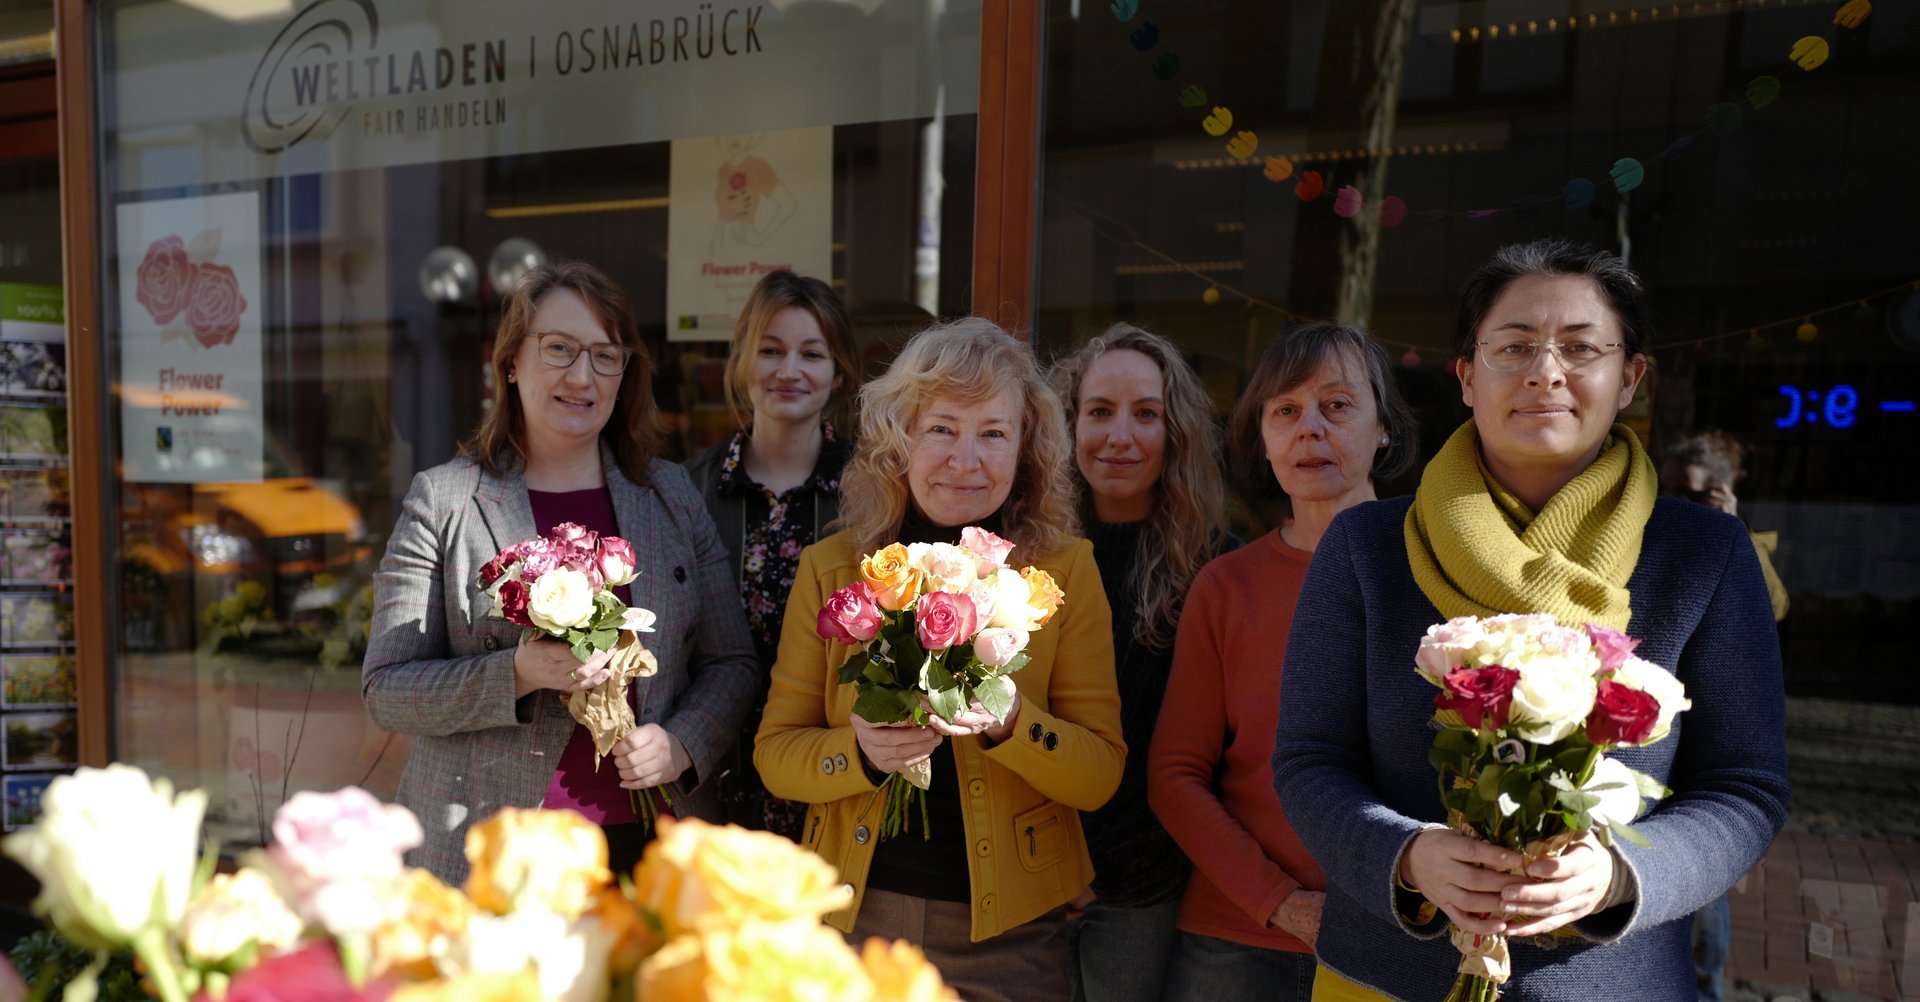 6 Frauen mit Blumensträußen in den Händen, im Vordergrund ein gelber Rosenstrauß